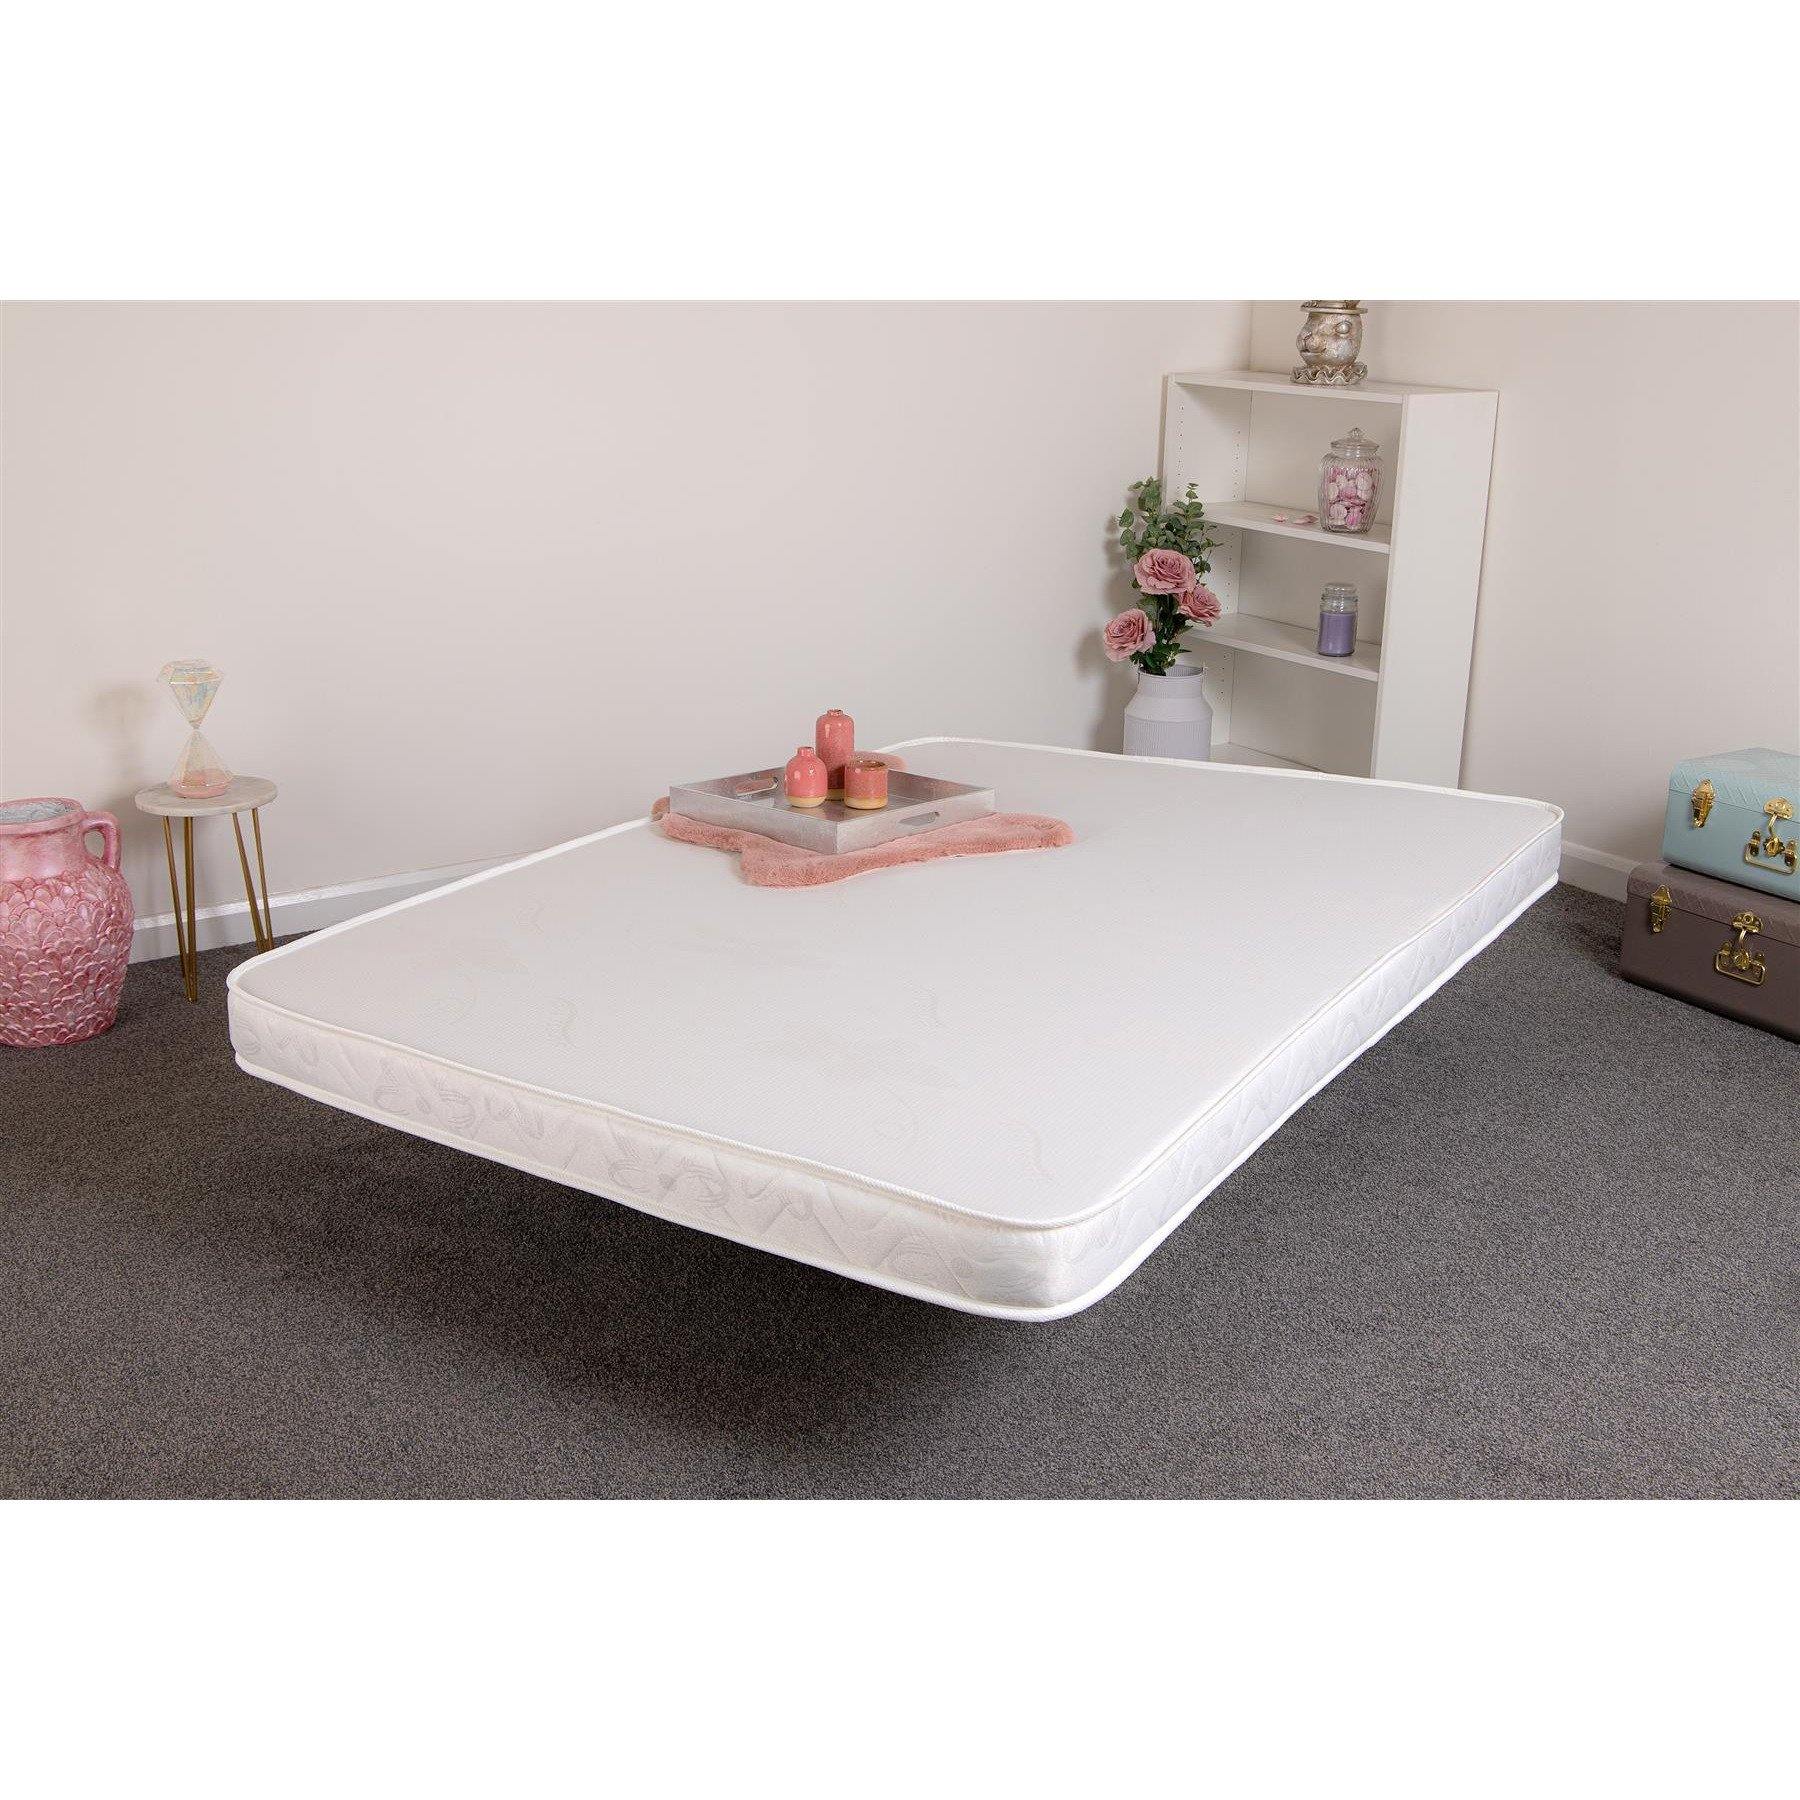 Starlight Beds Merga All Foam Stress Free Reflex Foam Mattress - Starlight Beds™